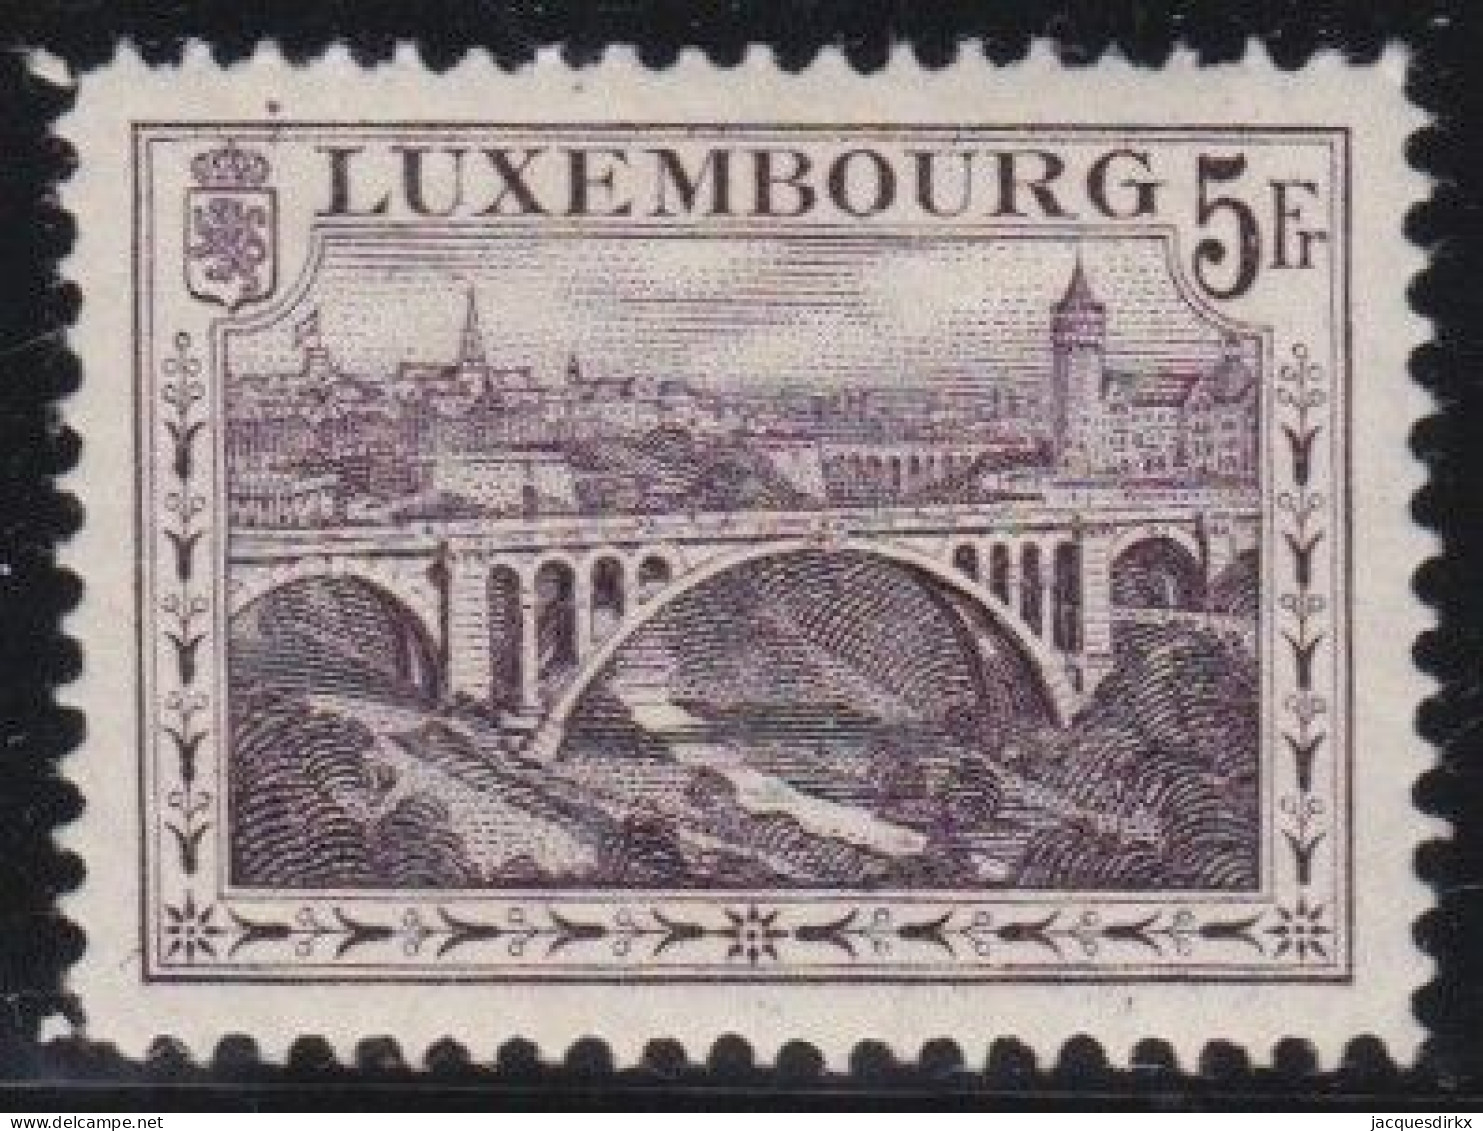 Luxembourg    .   Y&T     .    134  . Perf.  12½x12½     .    **   .      Neuf Avec Gomme Et SANS Charnière - 1914-24 Marie-Adélaïde